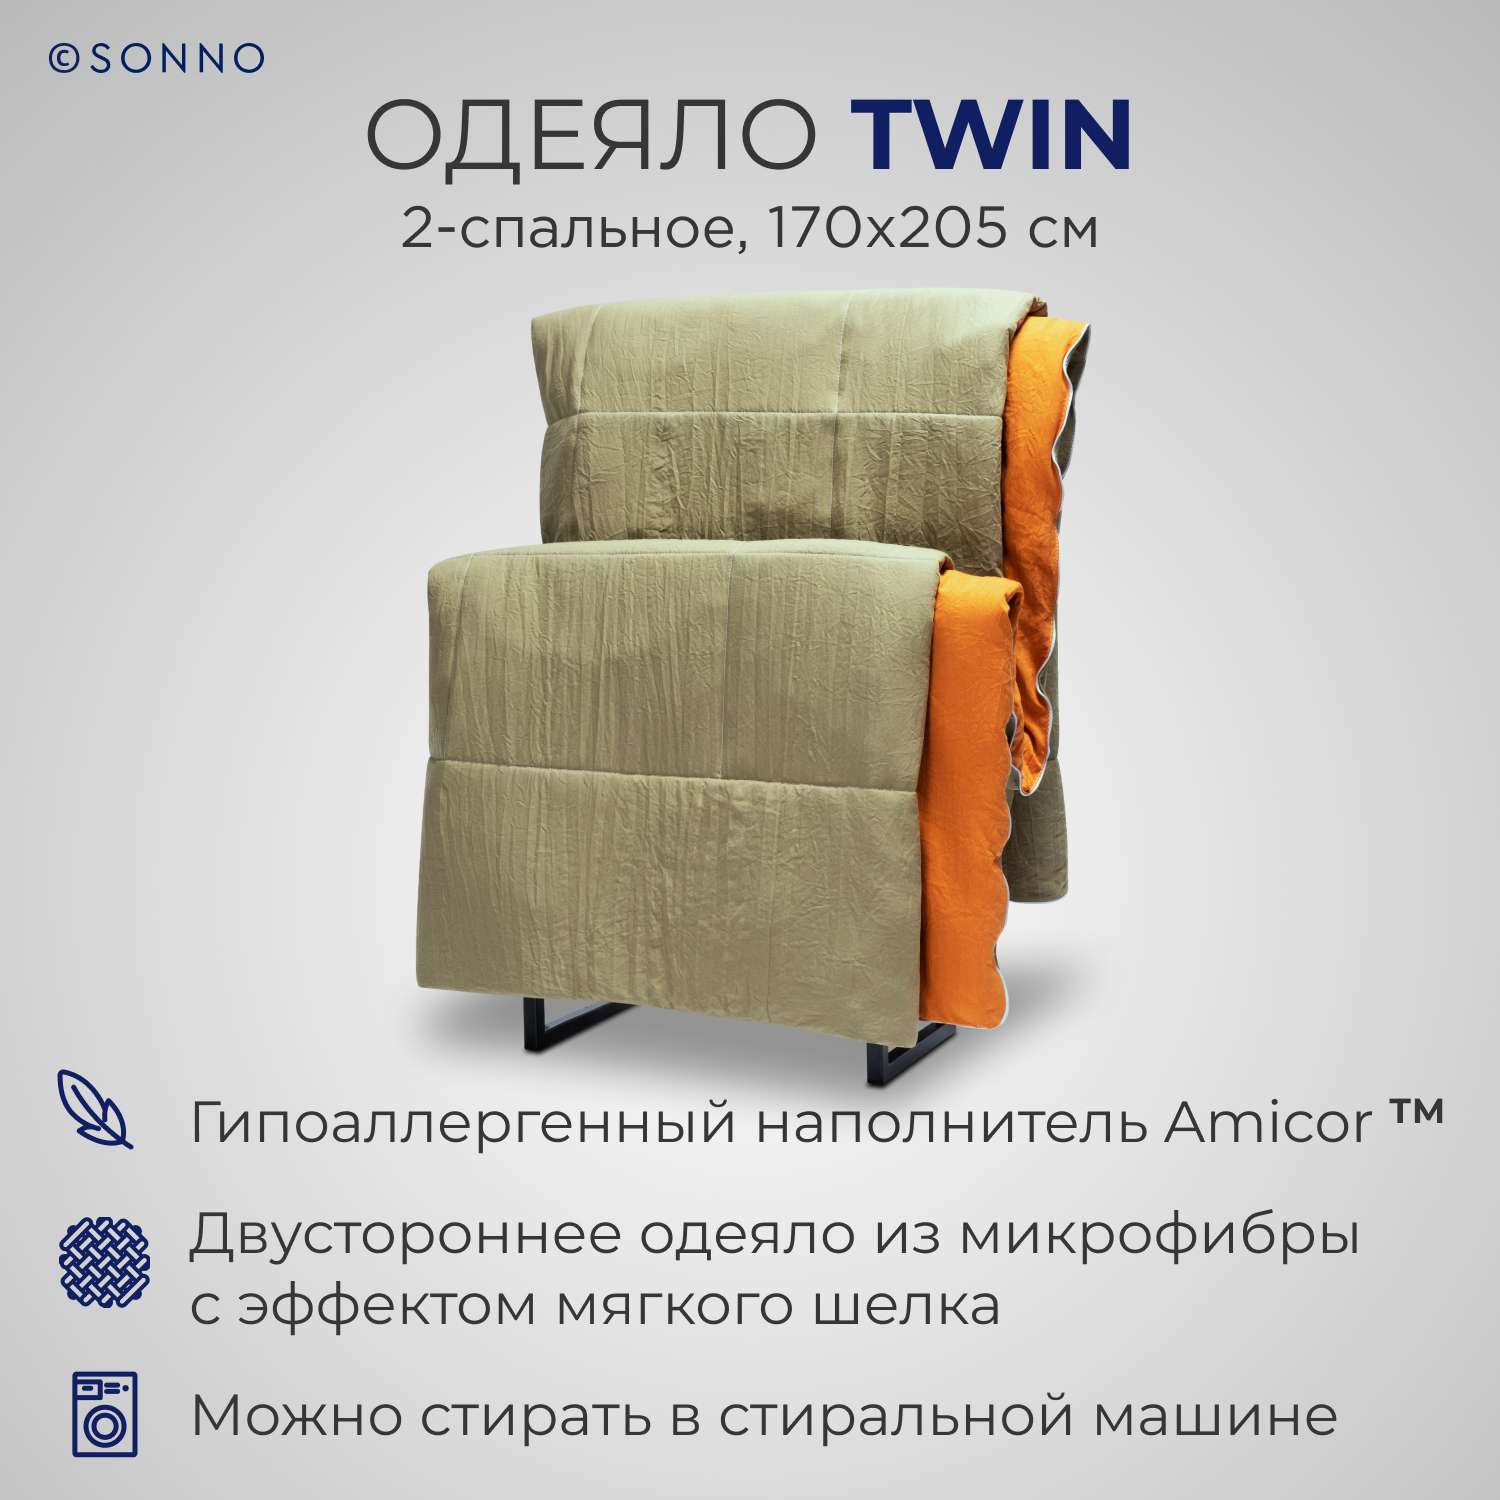 Одеяло SONNO TWIN 2-спальное 170х205 см цвет оранжевый оливковый - фото 1